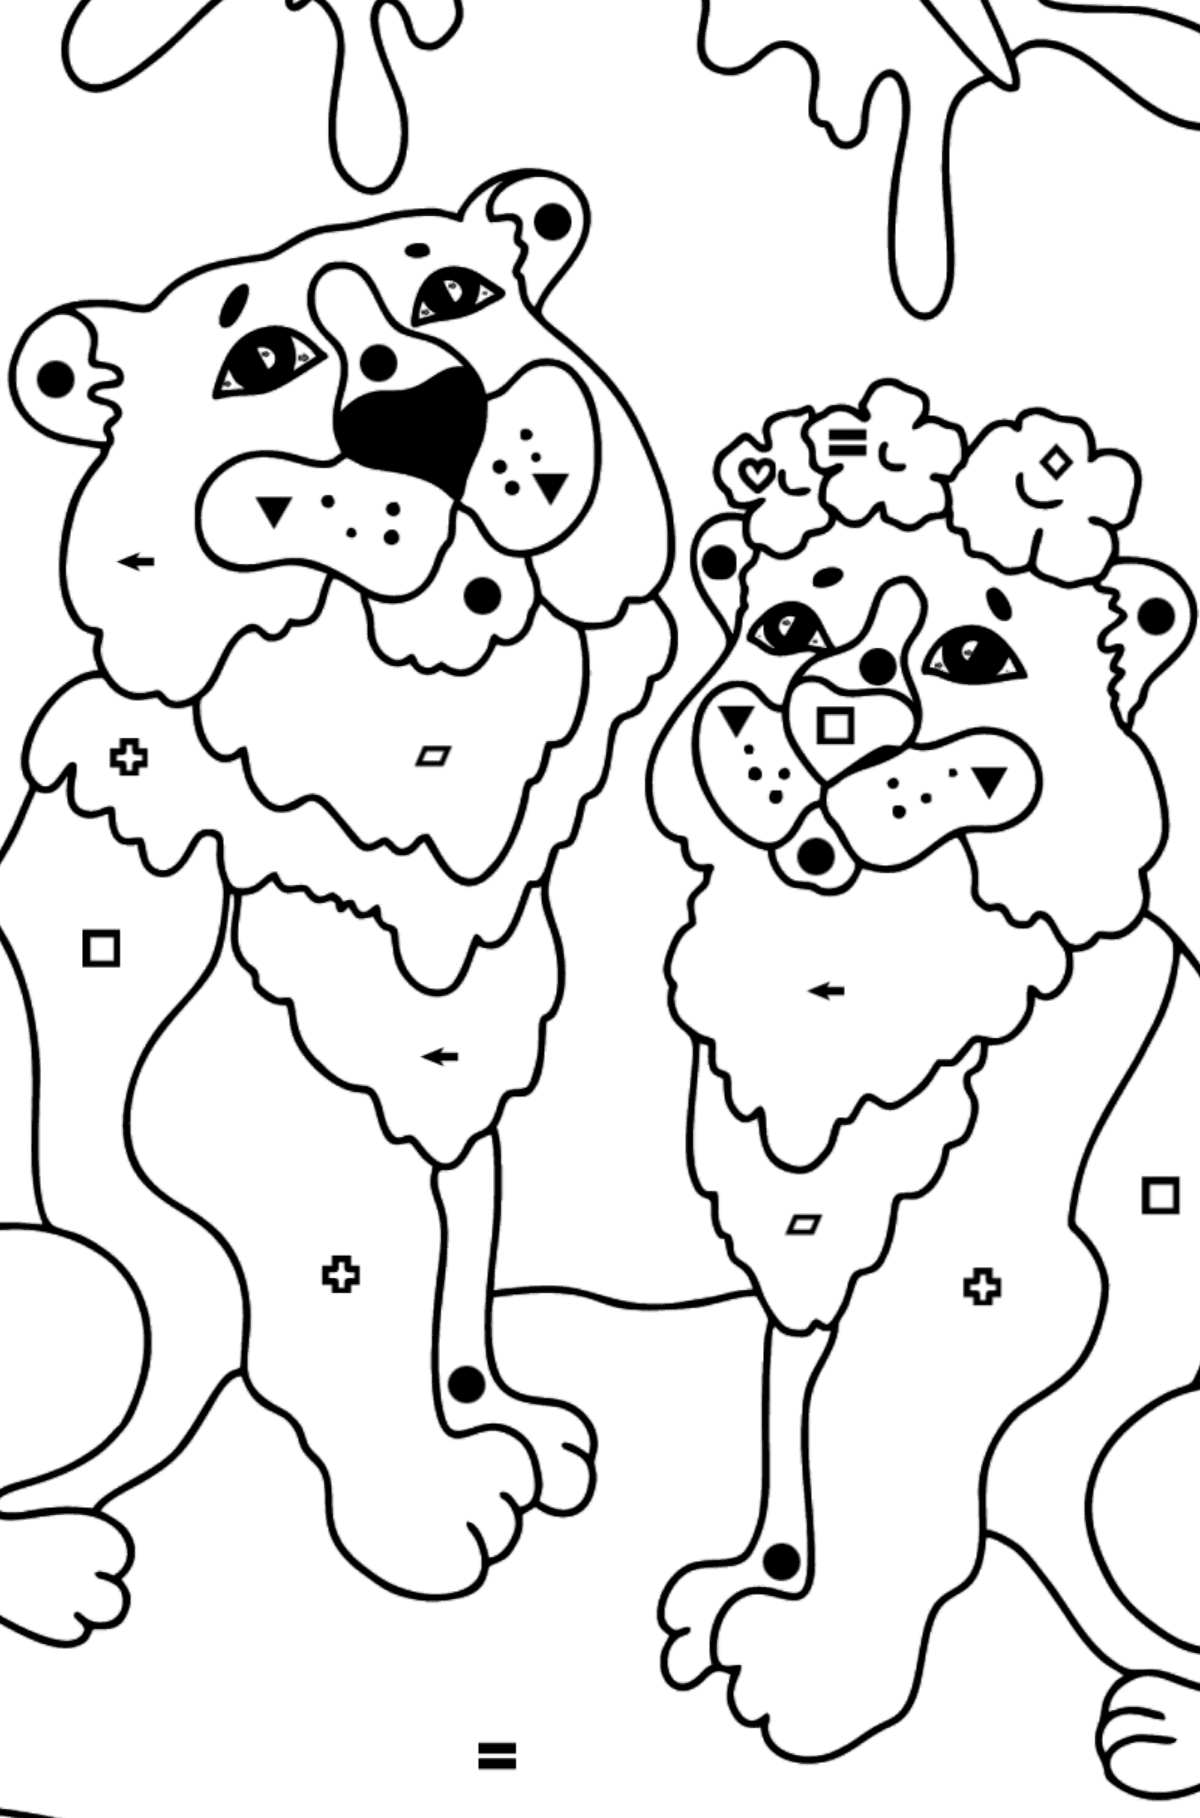 Tegning til fargelegging tiger og tiger (vanskelig) - Fargelegge etter symboler og geometriske former for barn